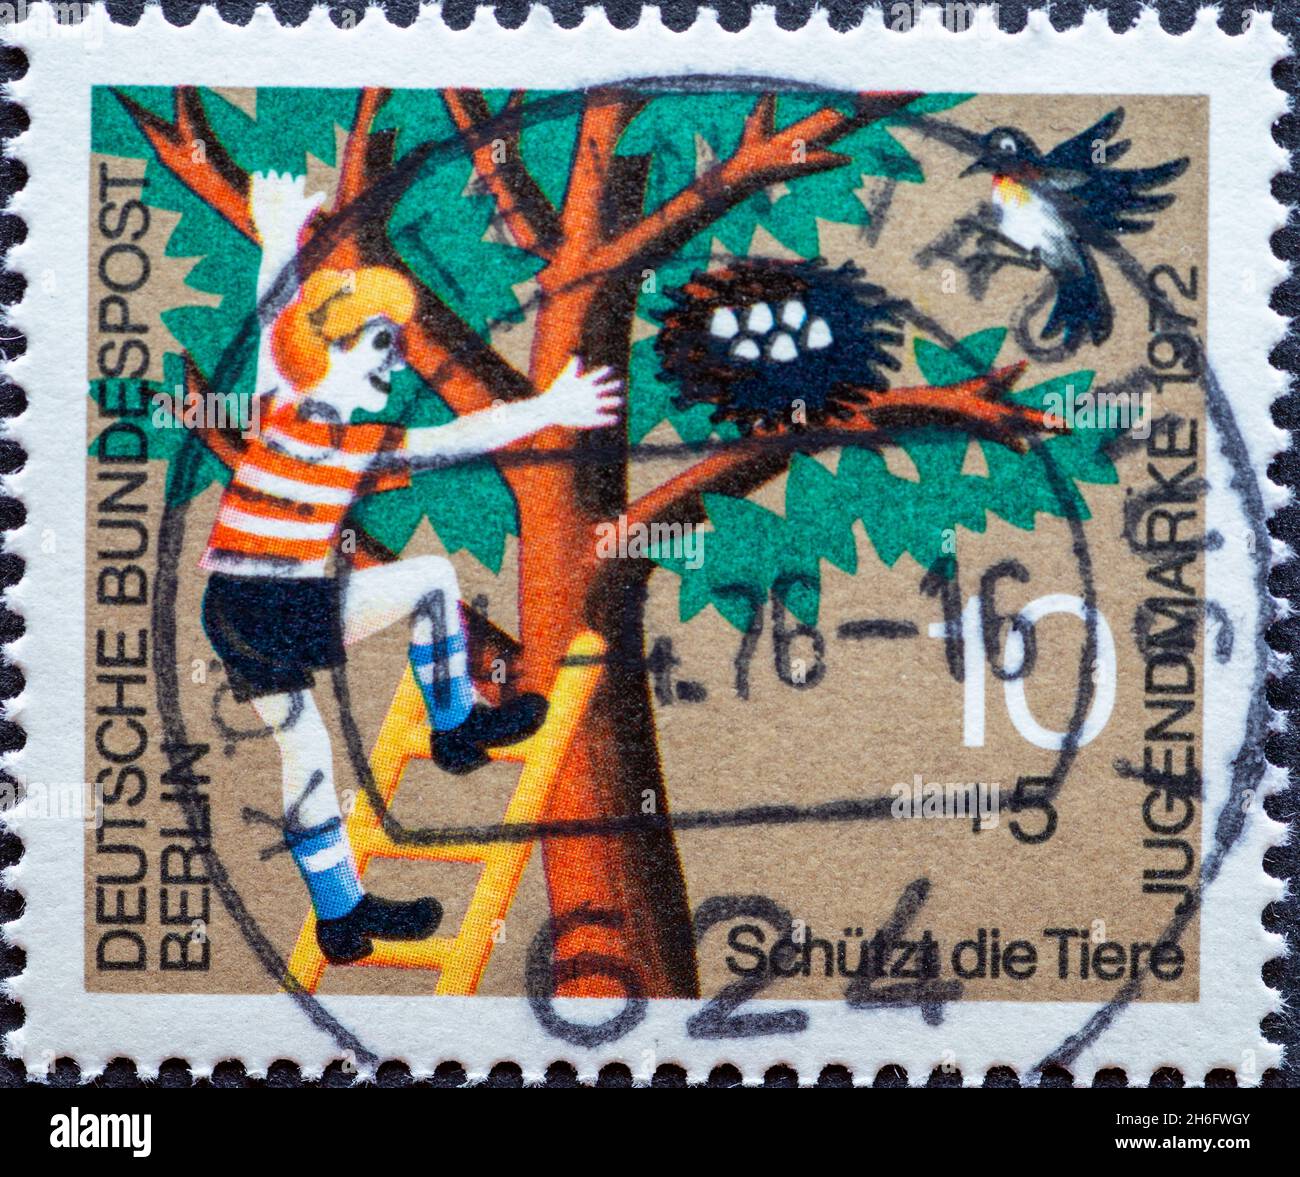 ALLEMAGNE, Berlin - VERS 1972: Un timbre-poste de l'Allemagne, Berlin montrant un timbre-poste de charité de 1972 pour les jeunes et le bien-être animal ici: Banque D'Images